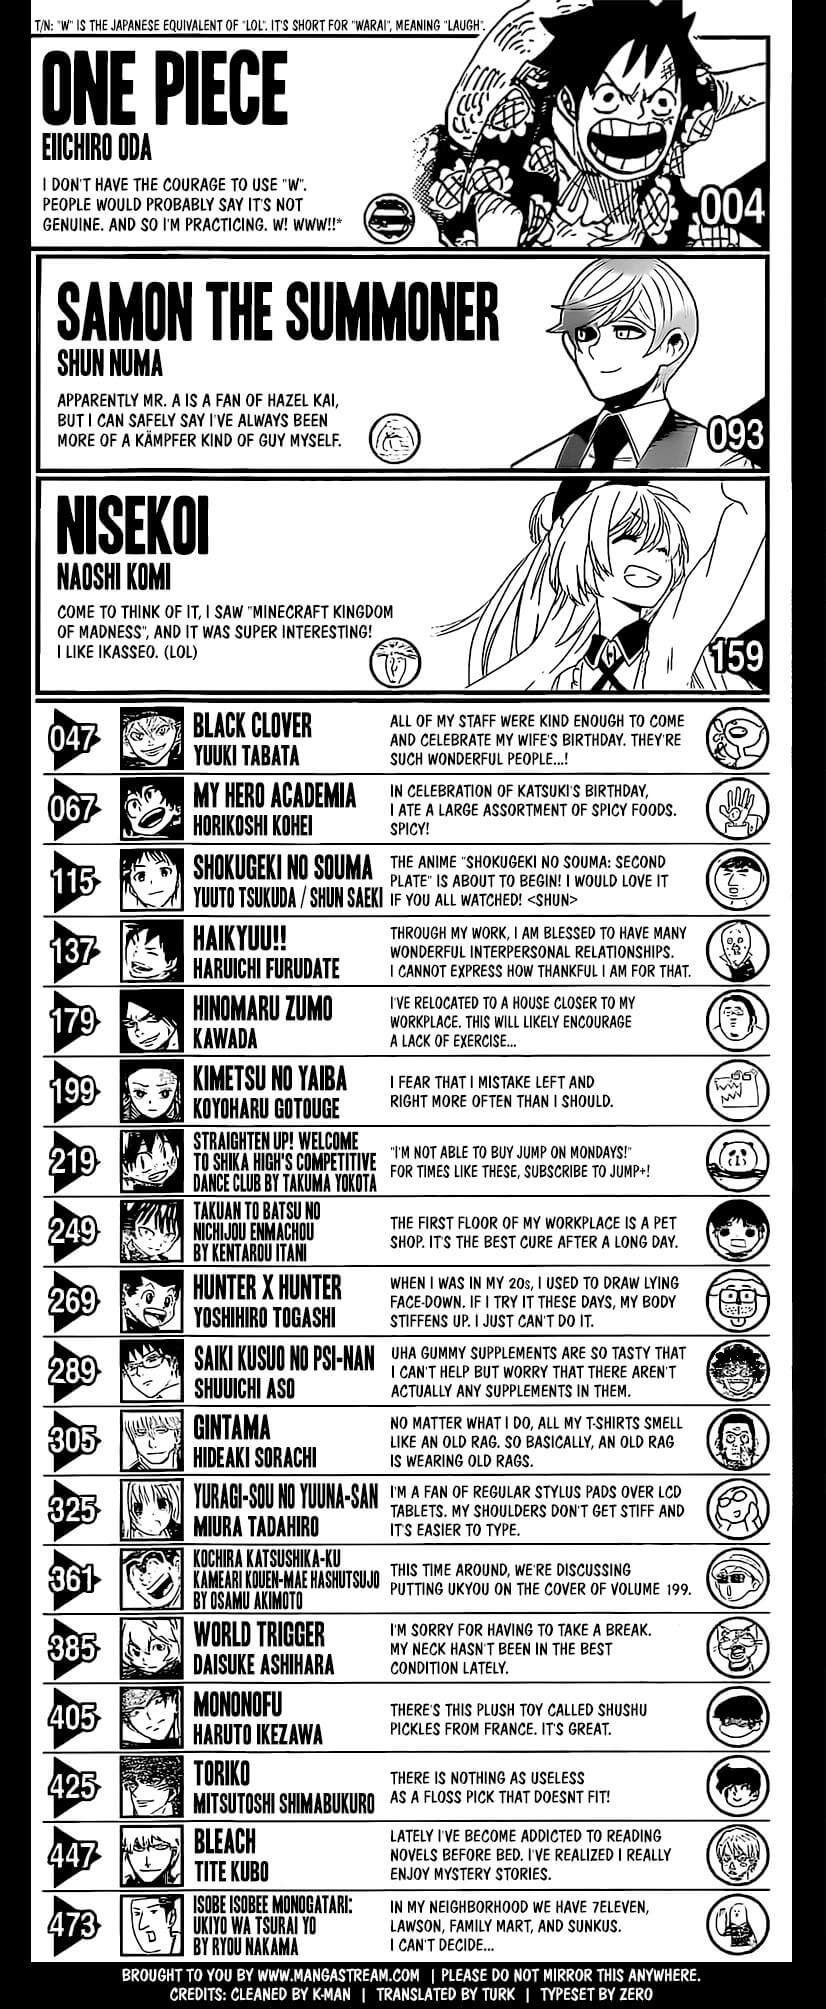 Shonen Jump Volume 29 2016 Comentarios